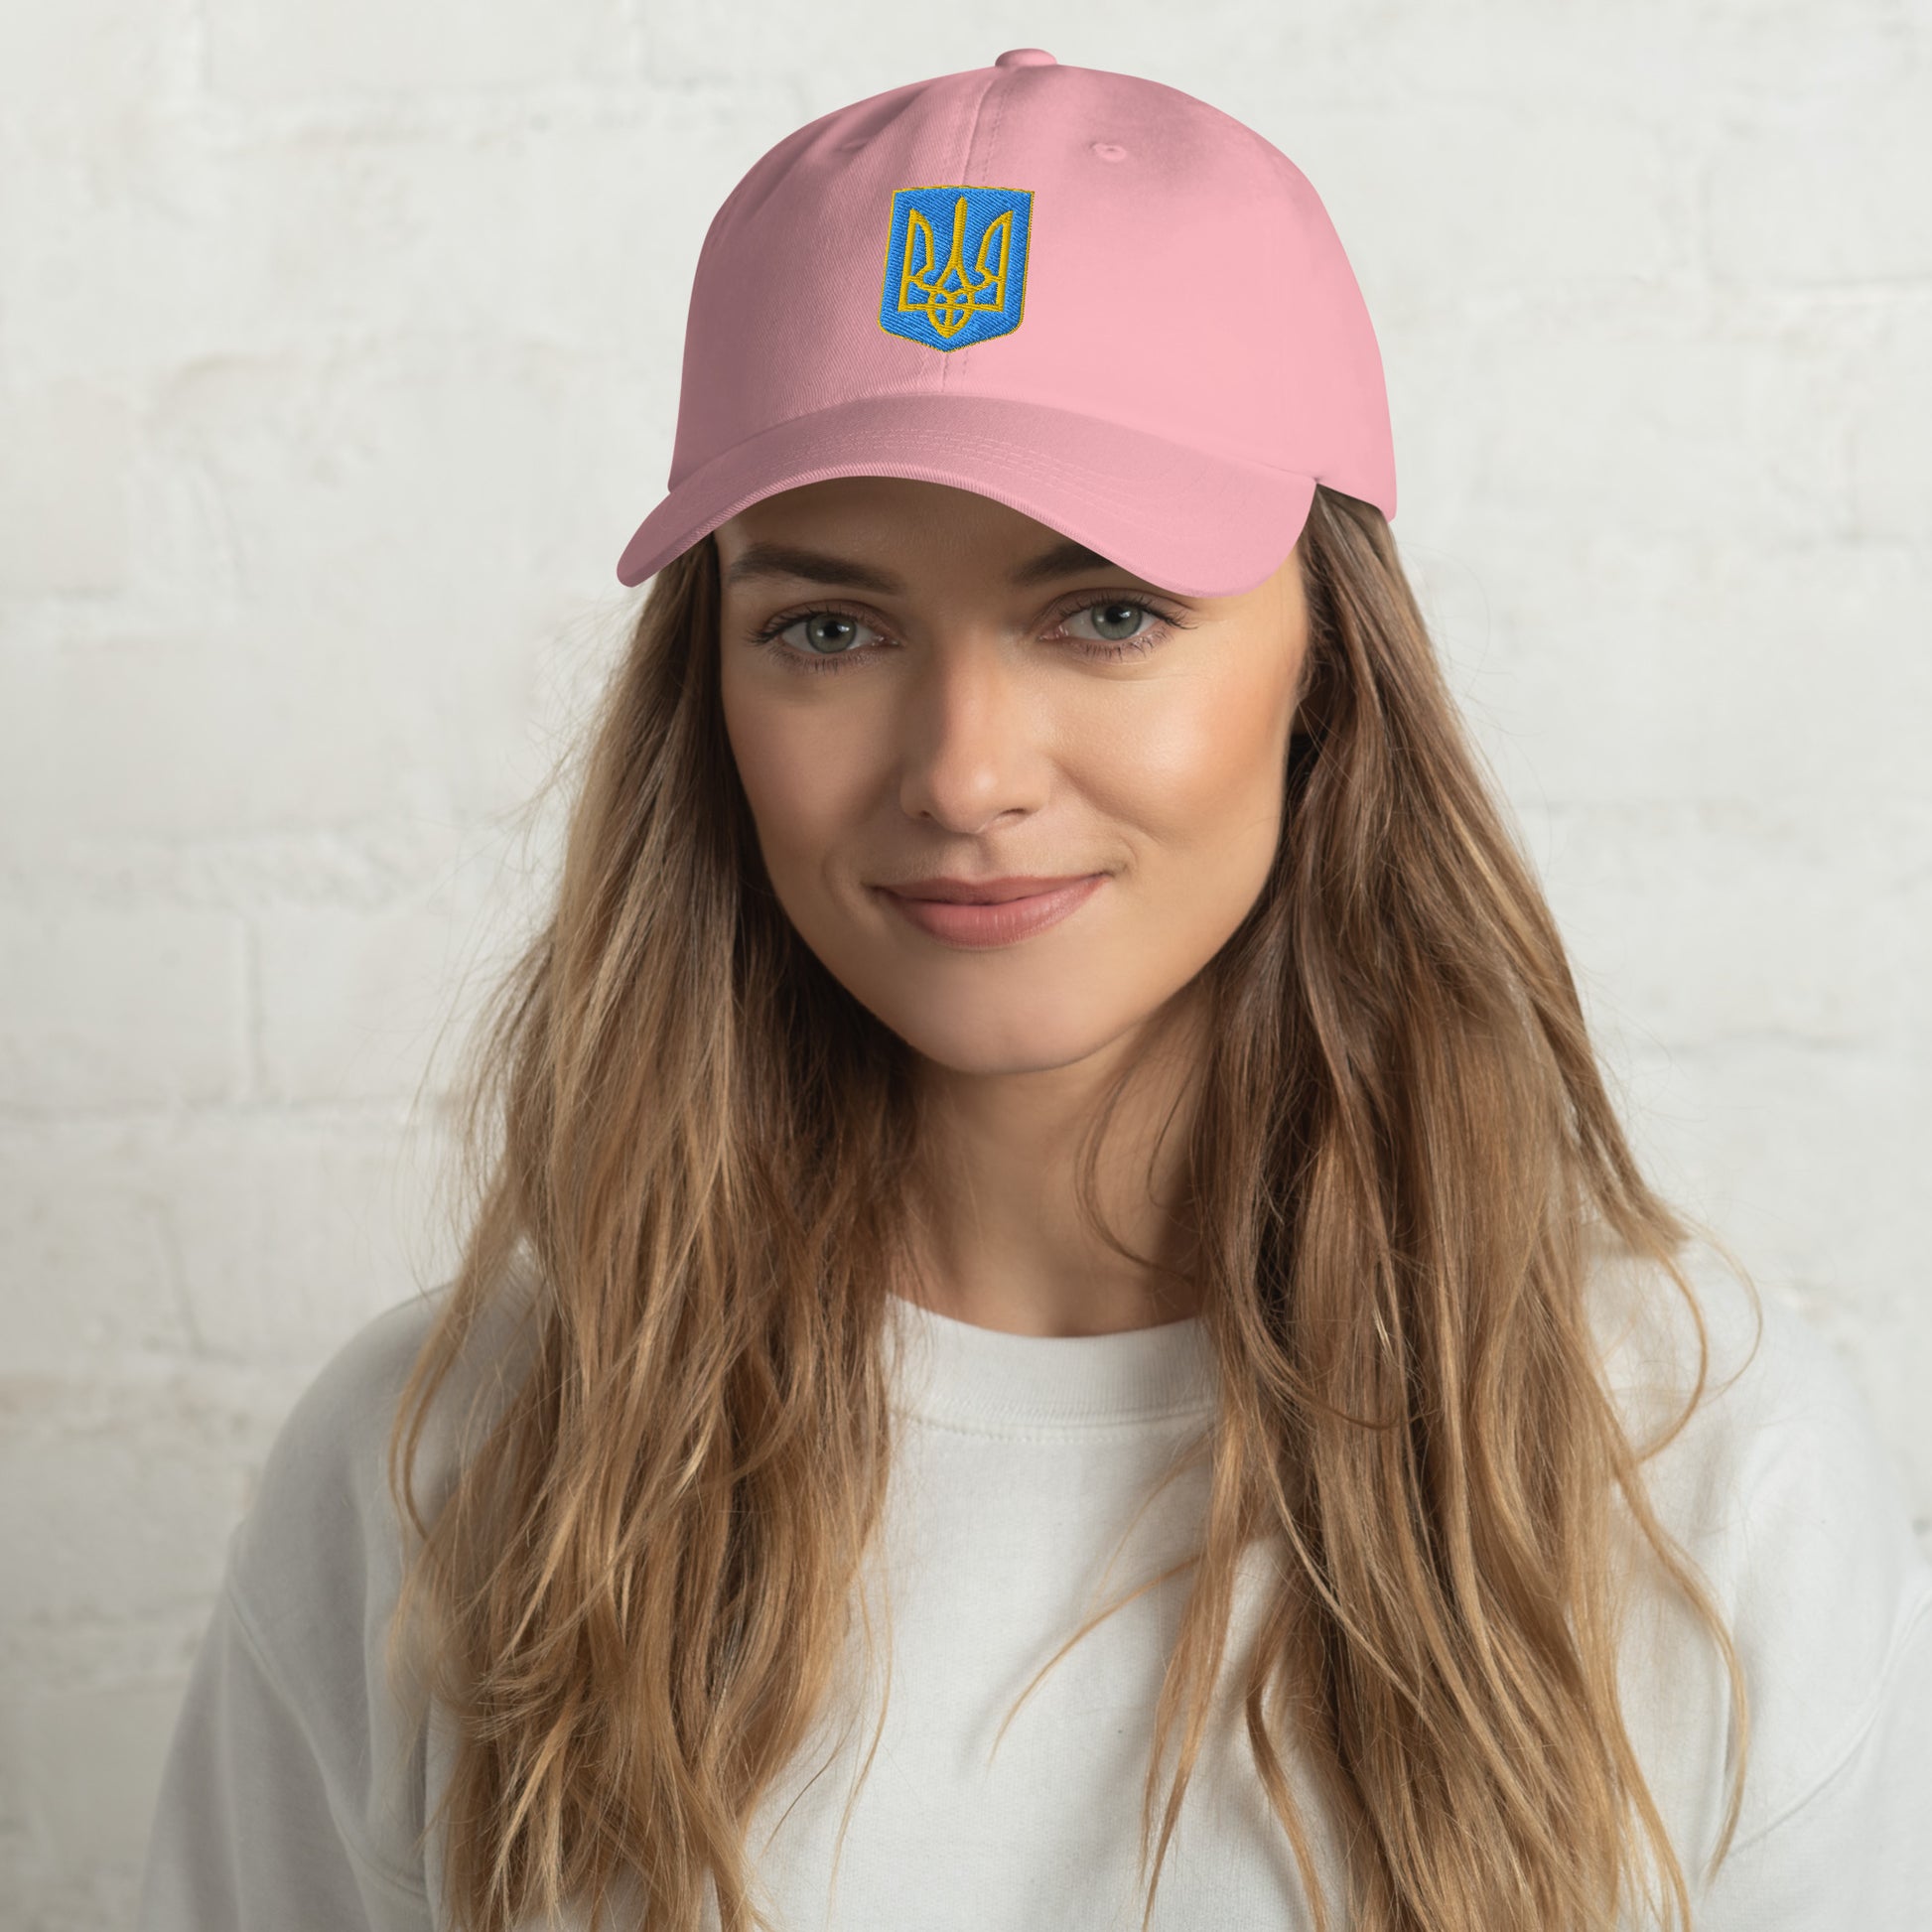 Dad Hat to support Ukraine relief efforts